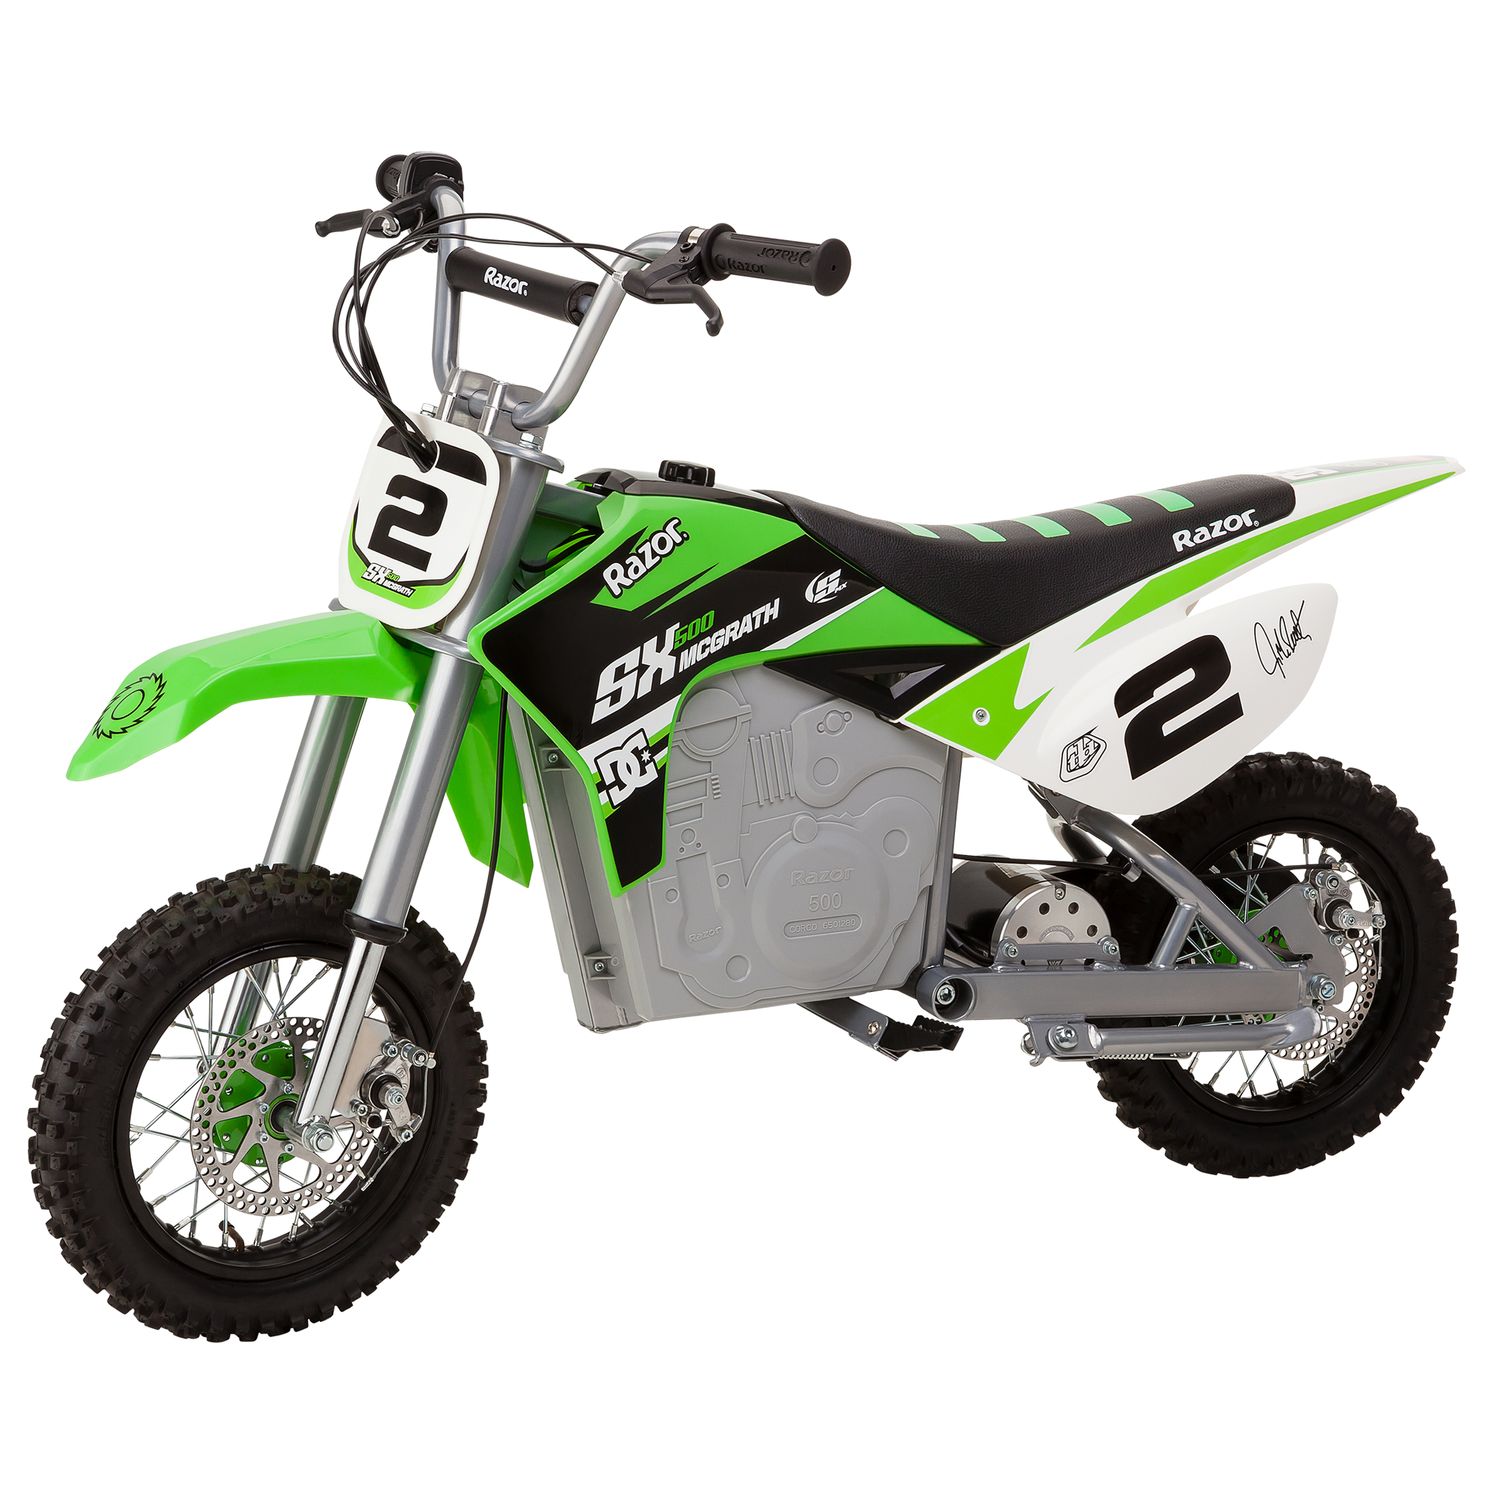 mcgrath sx350 electric dirt bike